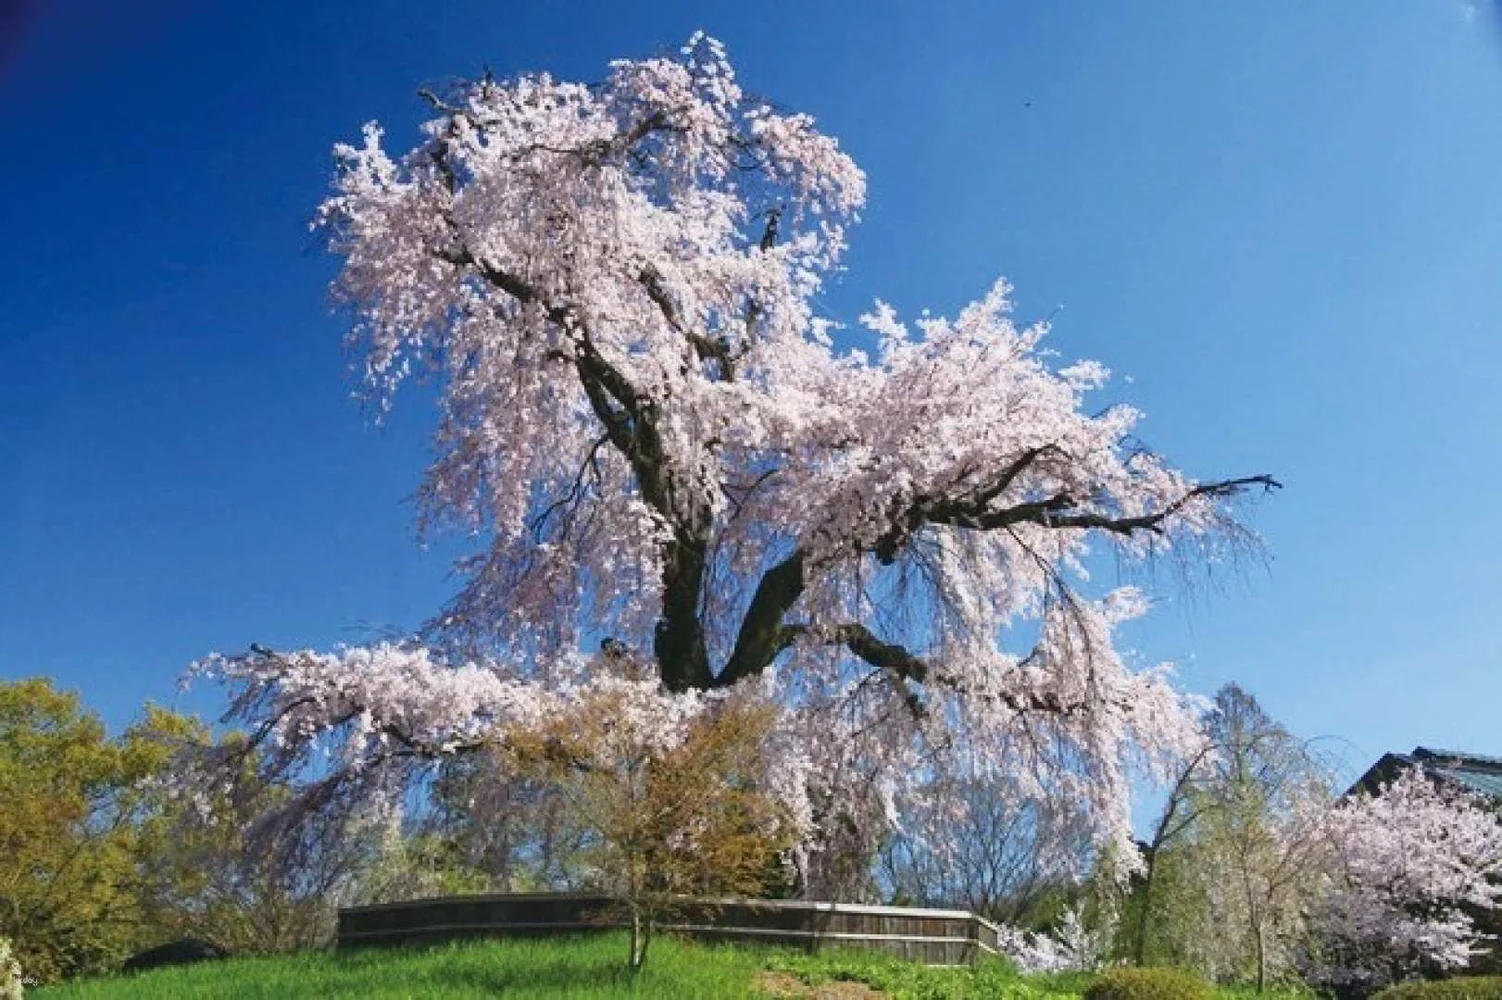 Kyoto 1-Day Cherry-Blossom Tour from Osaka: Hirano Shrine & Maruyama Park & Keage Incline